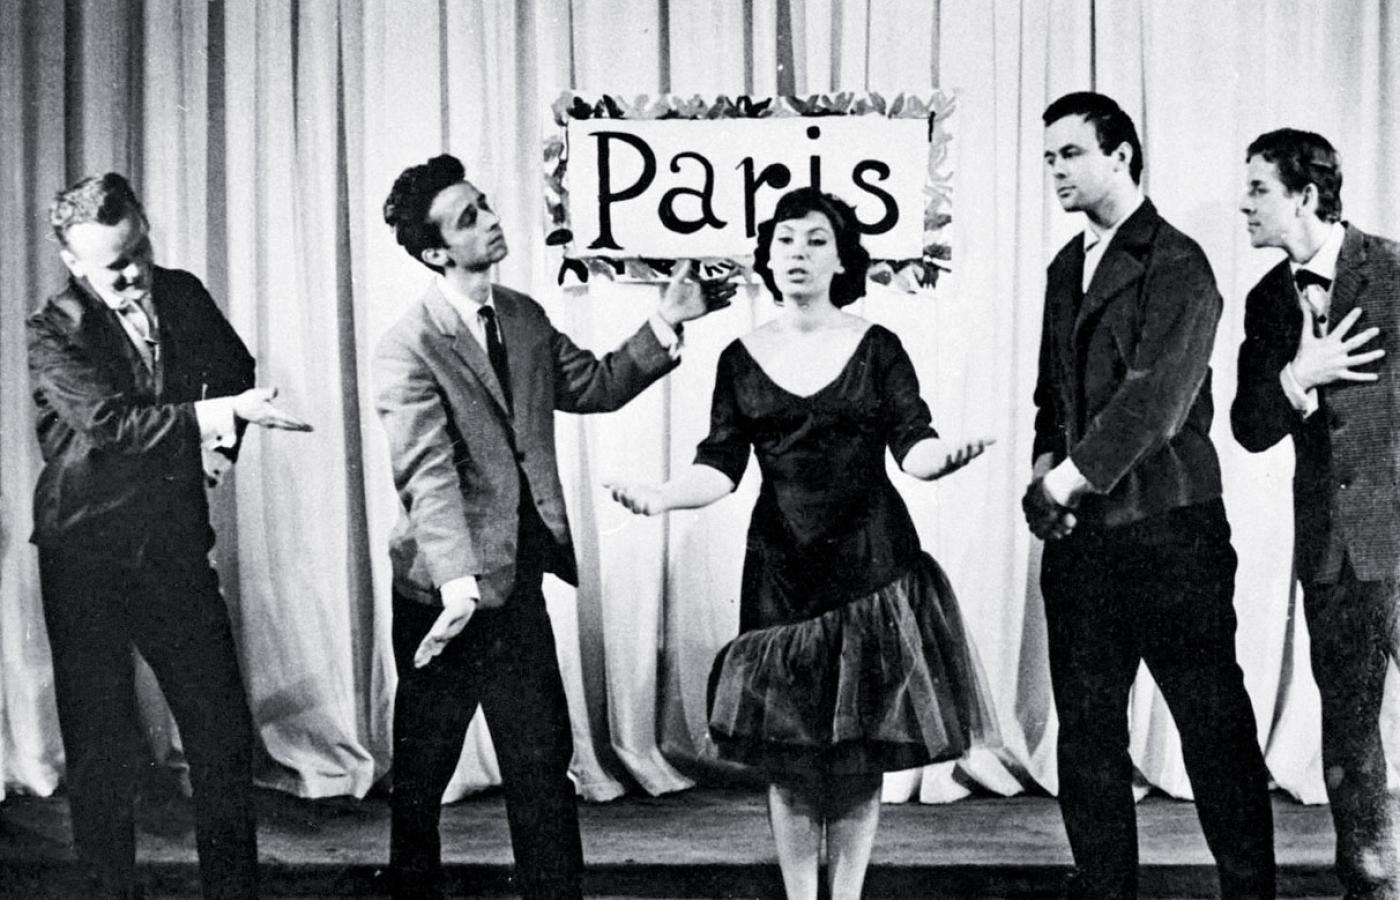 Studencki Teatr Satyryków, lata 60. Na fot. w centrum od lewej: Jacek Fedorowicz, Zofia Merle i Stanisław Tym.